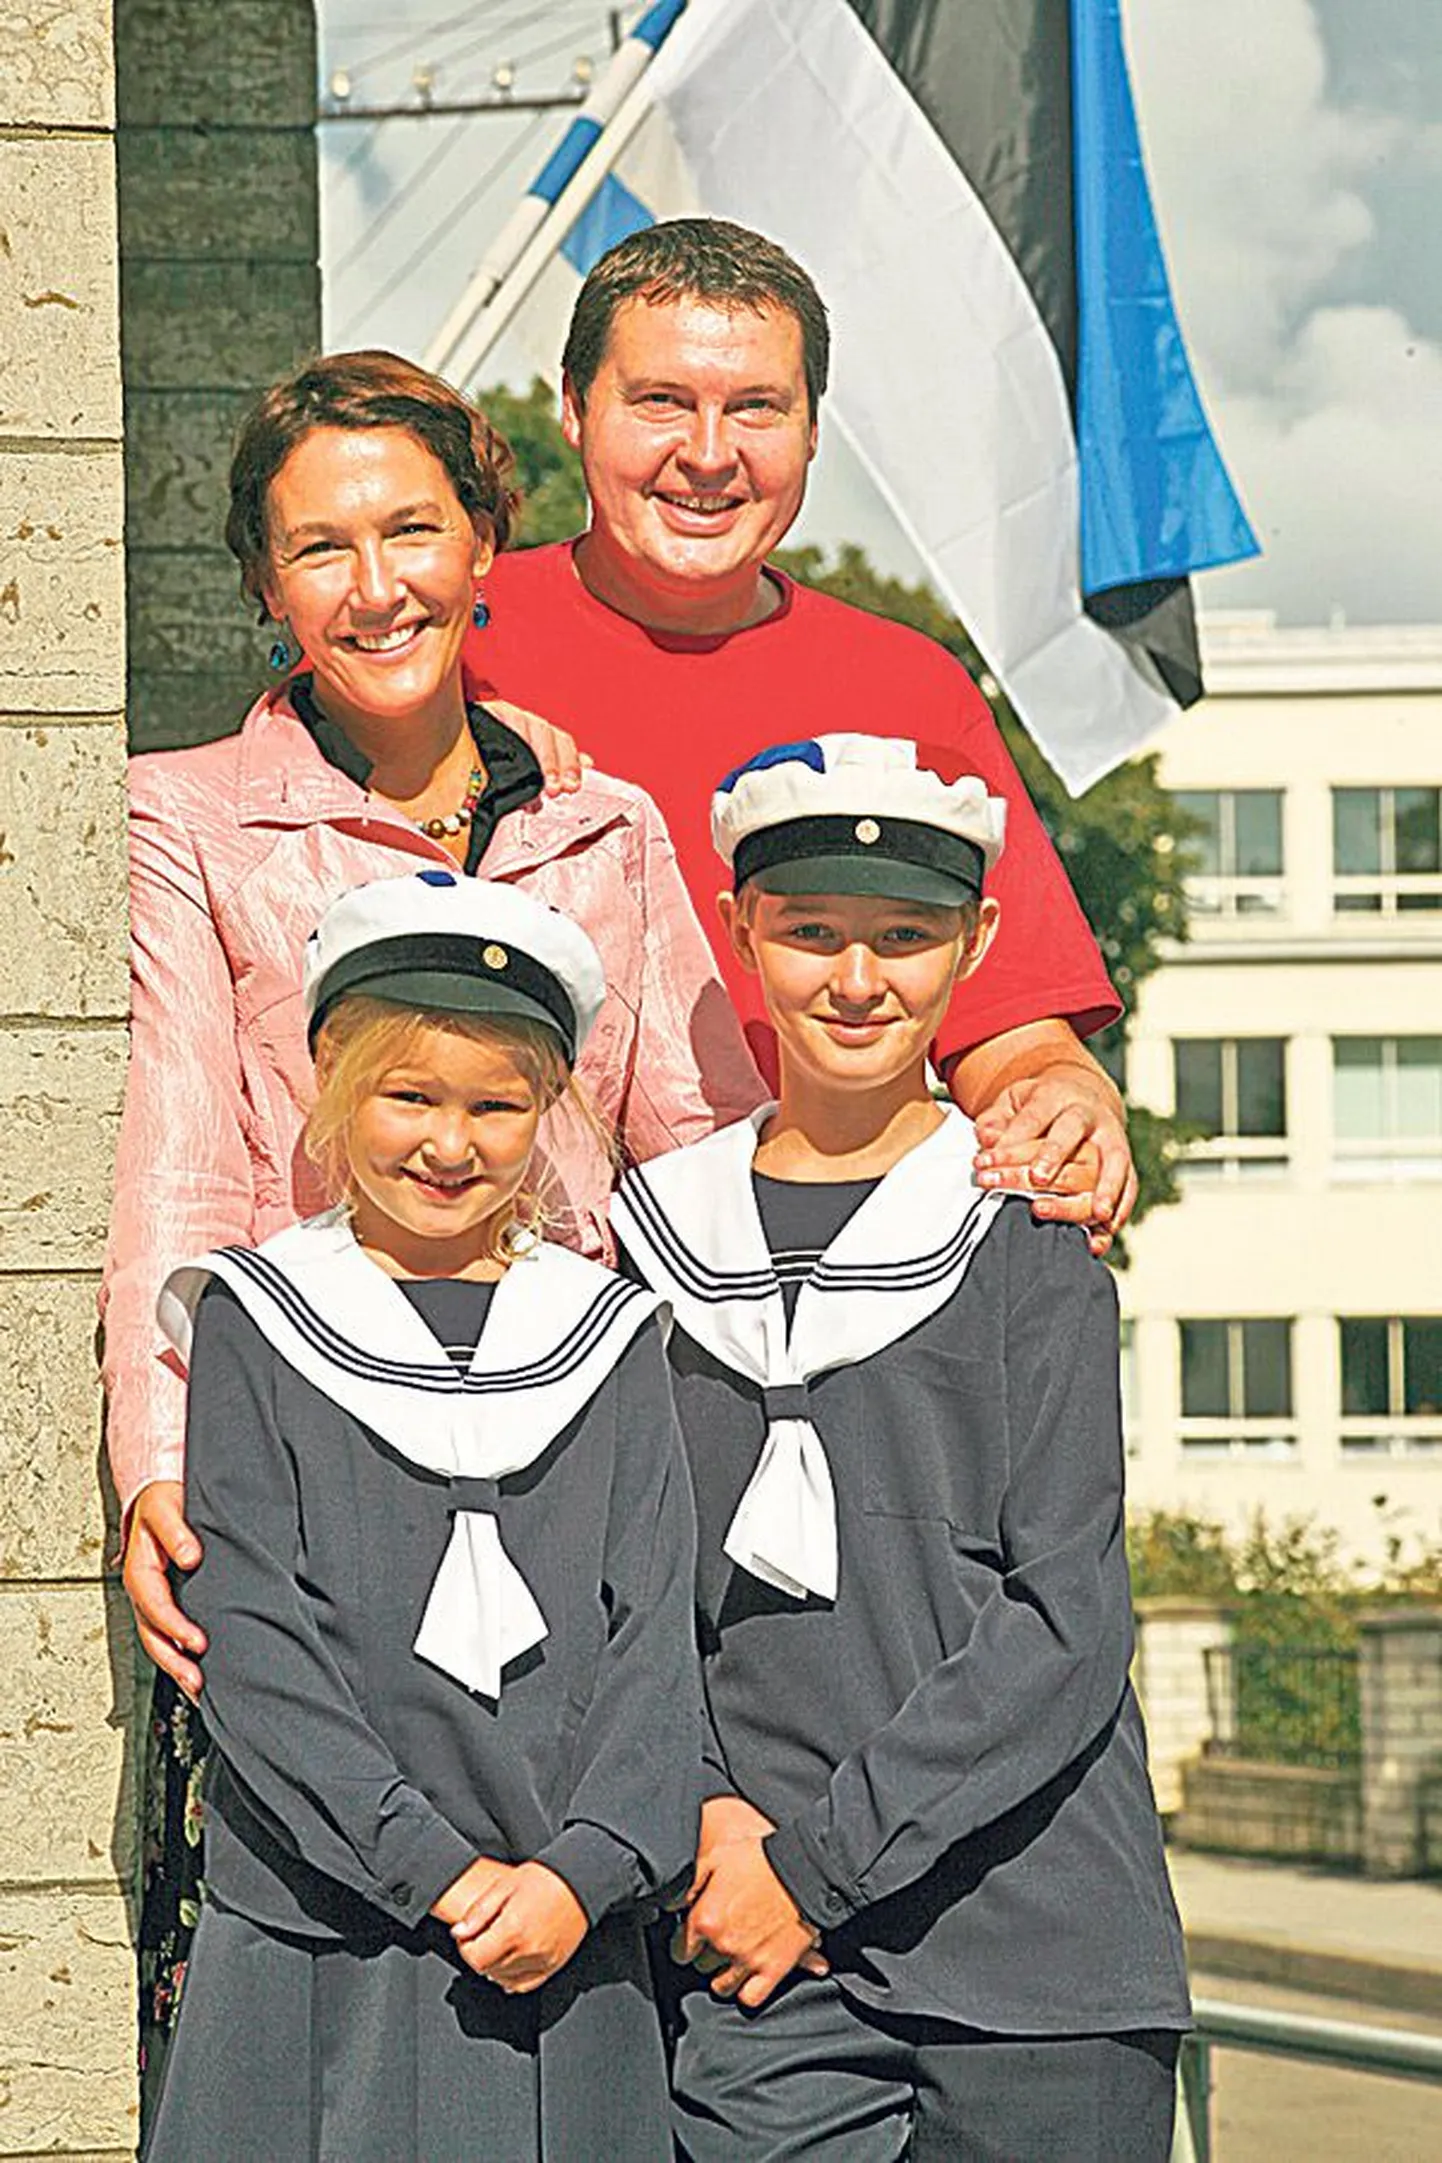 2011: tütar Raheli esimene koolipäev, pildil ka poeg Gert Avar ja pereisa Alvar. «Mind liigutab see sinimustvalge seal taustal. Käinud ise nõukogude ajal koolis, omandab see lipp mu enda laste taustal sügavama tähenduse,» märgib Külli.